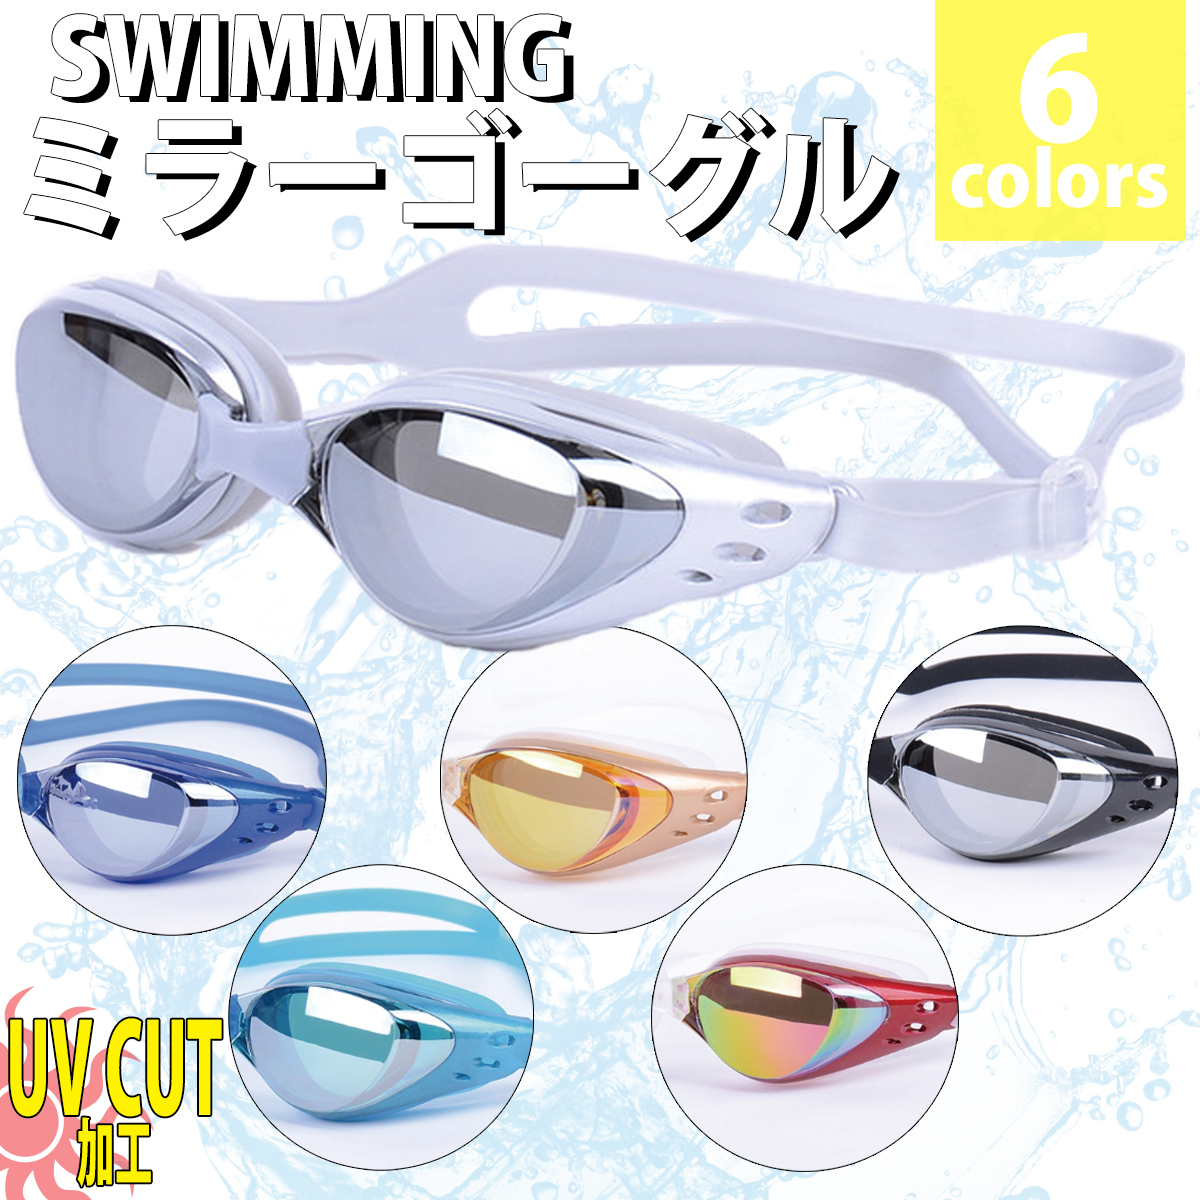  защитные очки ребенок плавание Kids взрослый Mirage nia плавание защитные очки с футляром зеркало защитные очки плавание женский мужской UV cut Jim бассейн фитнес 